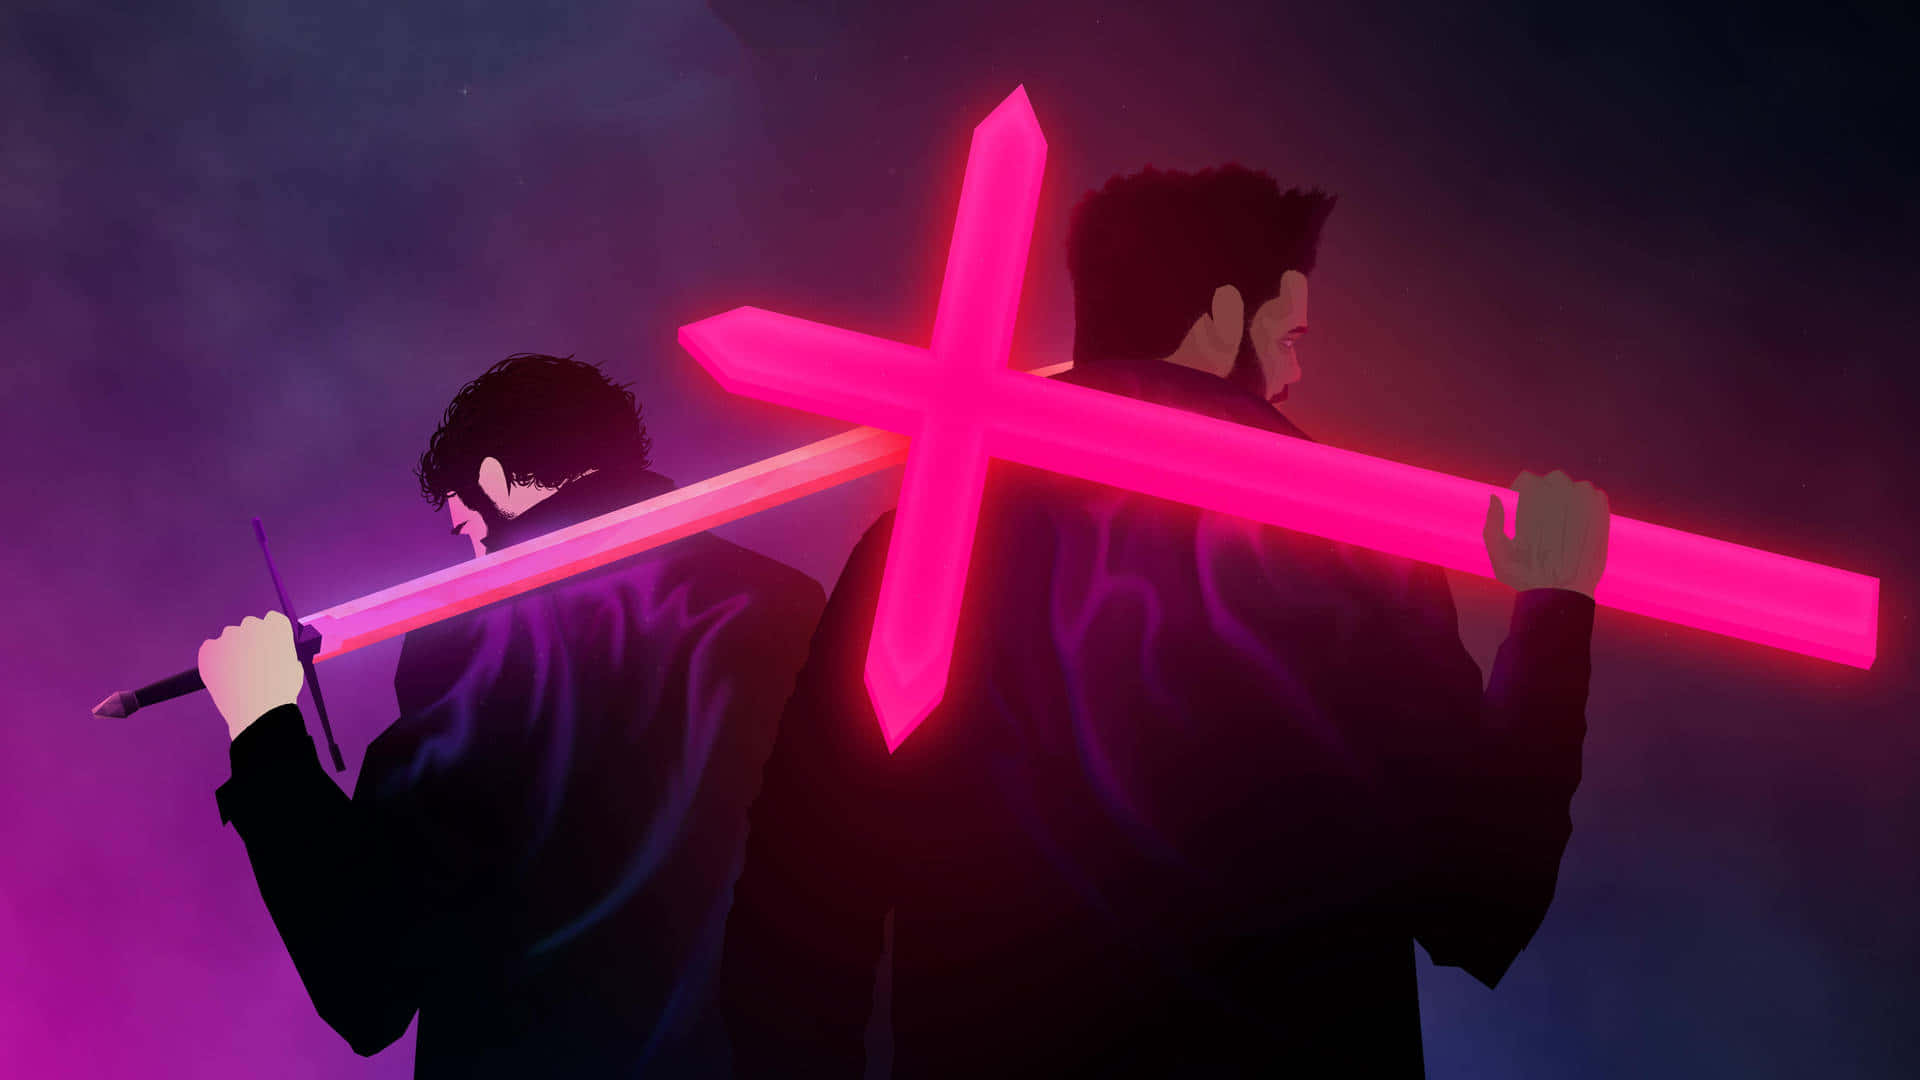 Zweimänner Halten Ein Pinkes Schwert Vor Einem Dunklen Hintergrund.